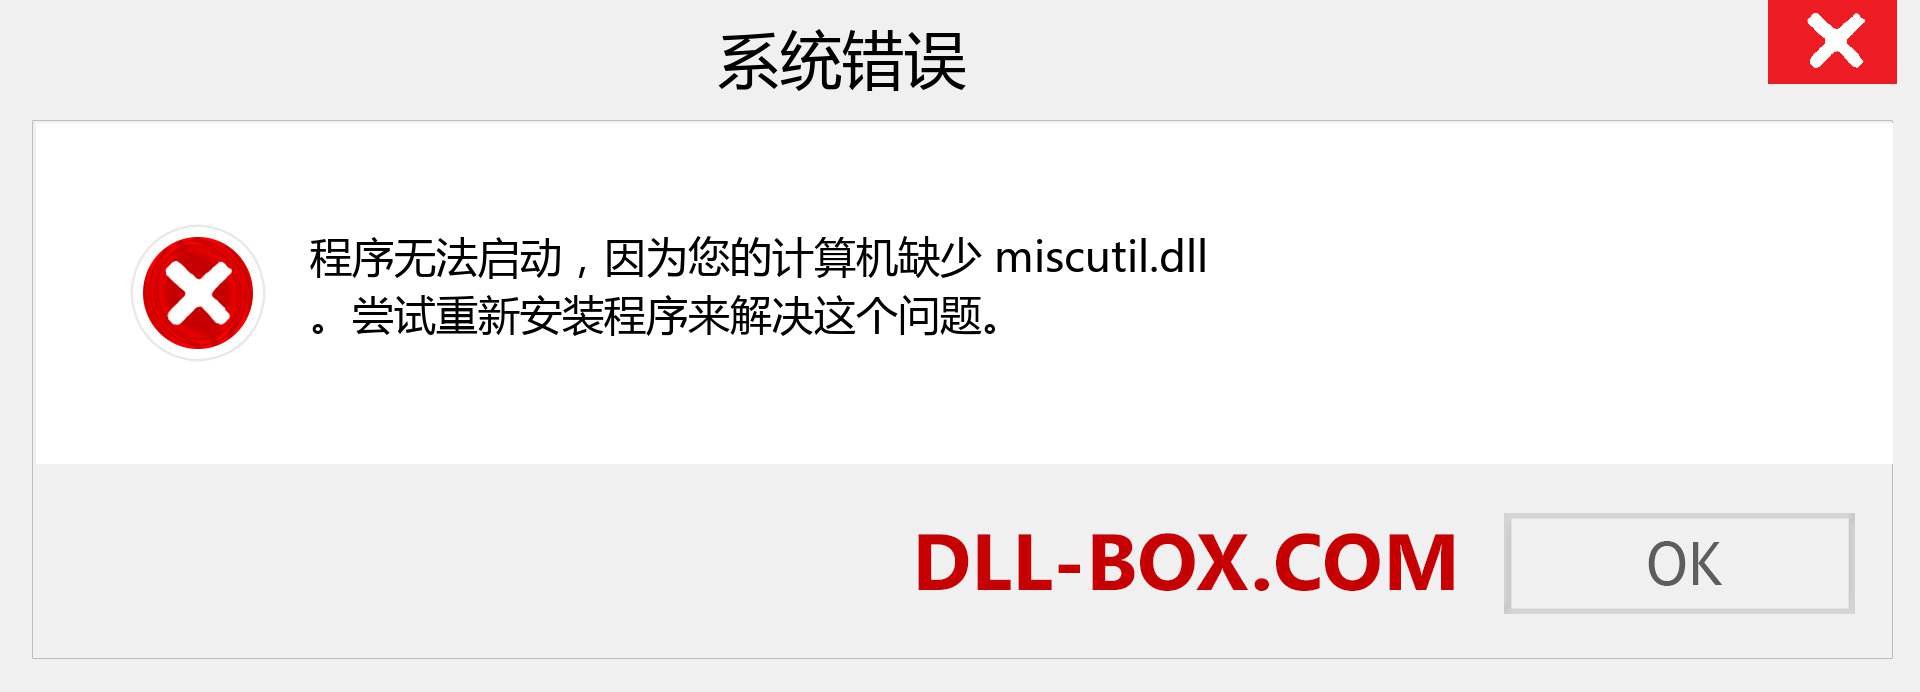 miscutil.dll 文件丢失？。 适用于 Windows 7、8、10 的下载 - 修复 Windows、照片、图像上的 miscutil dll 丢失错误